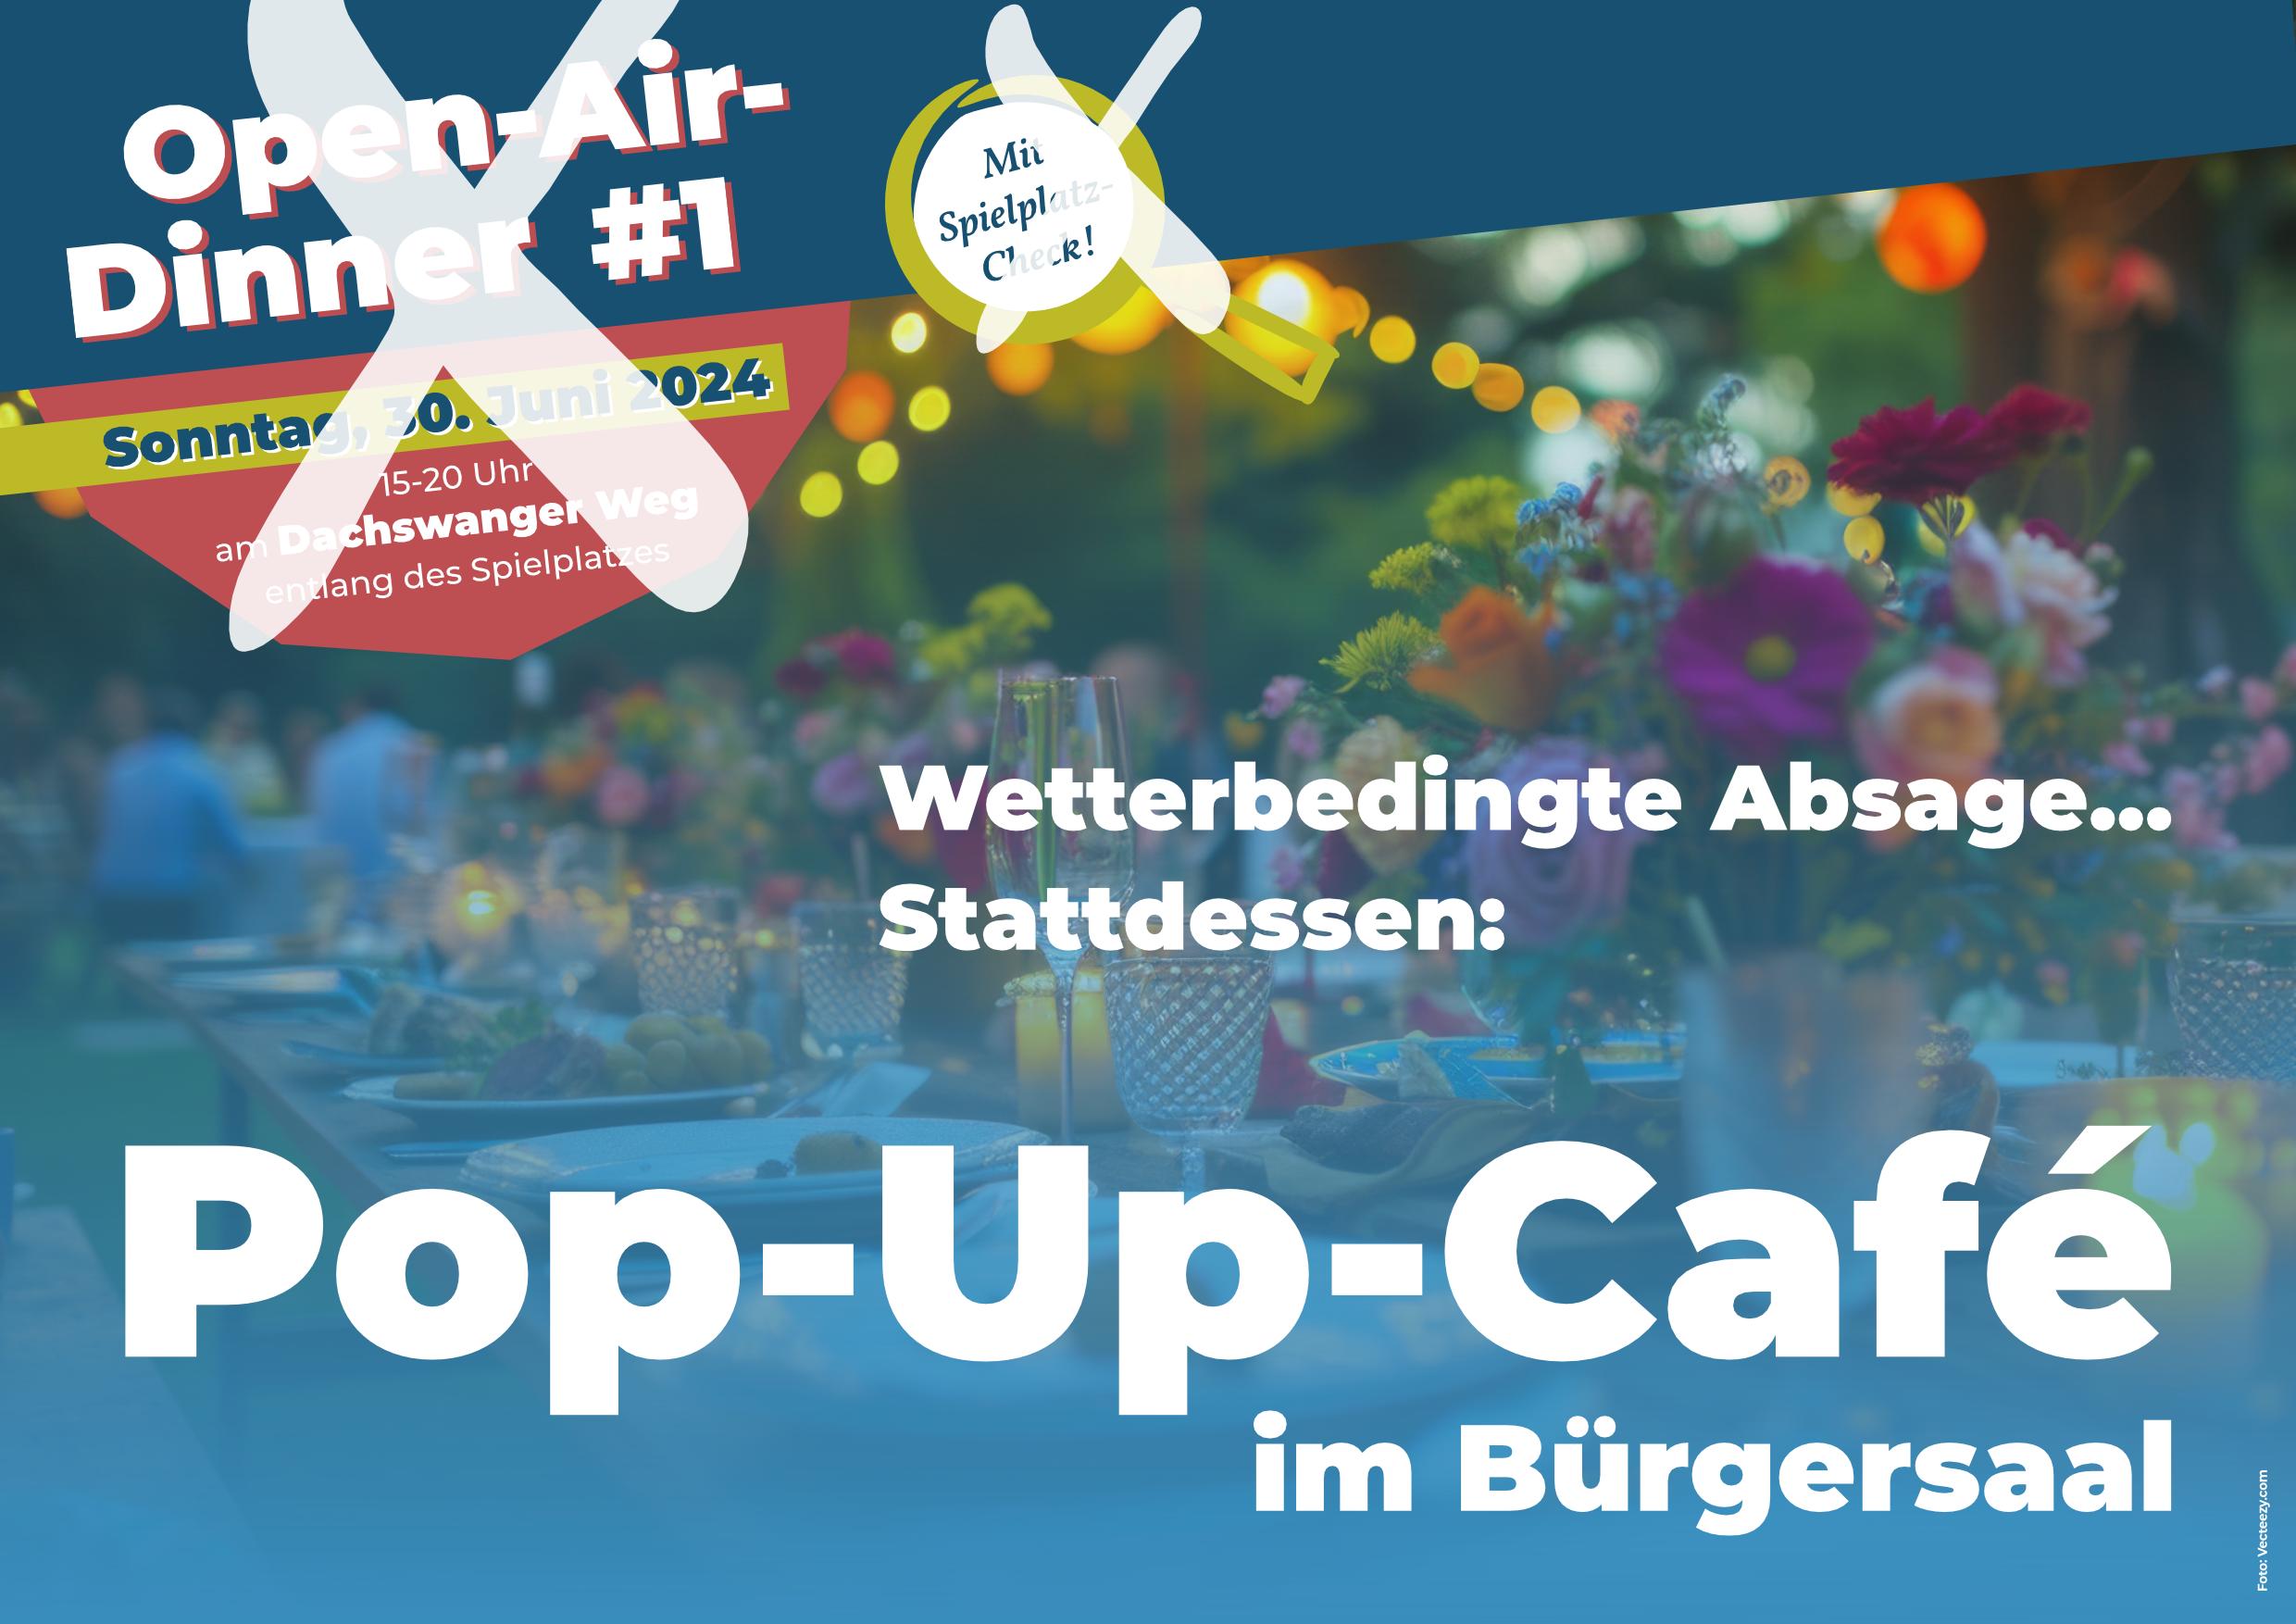 Pop-up-Café statt Open-Air-Dinner #1